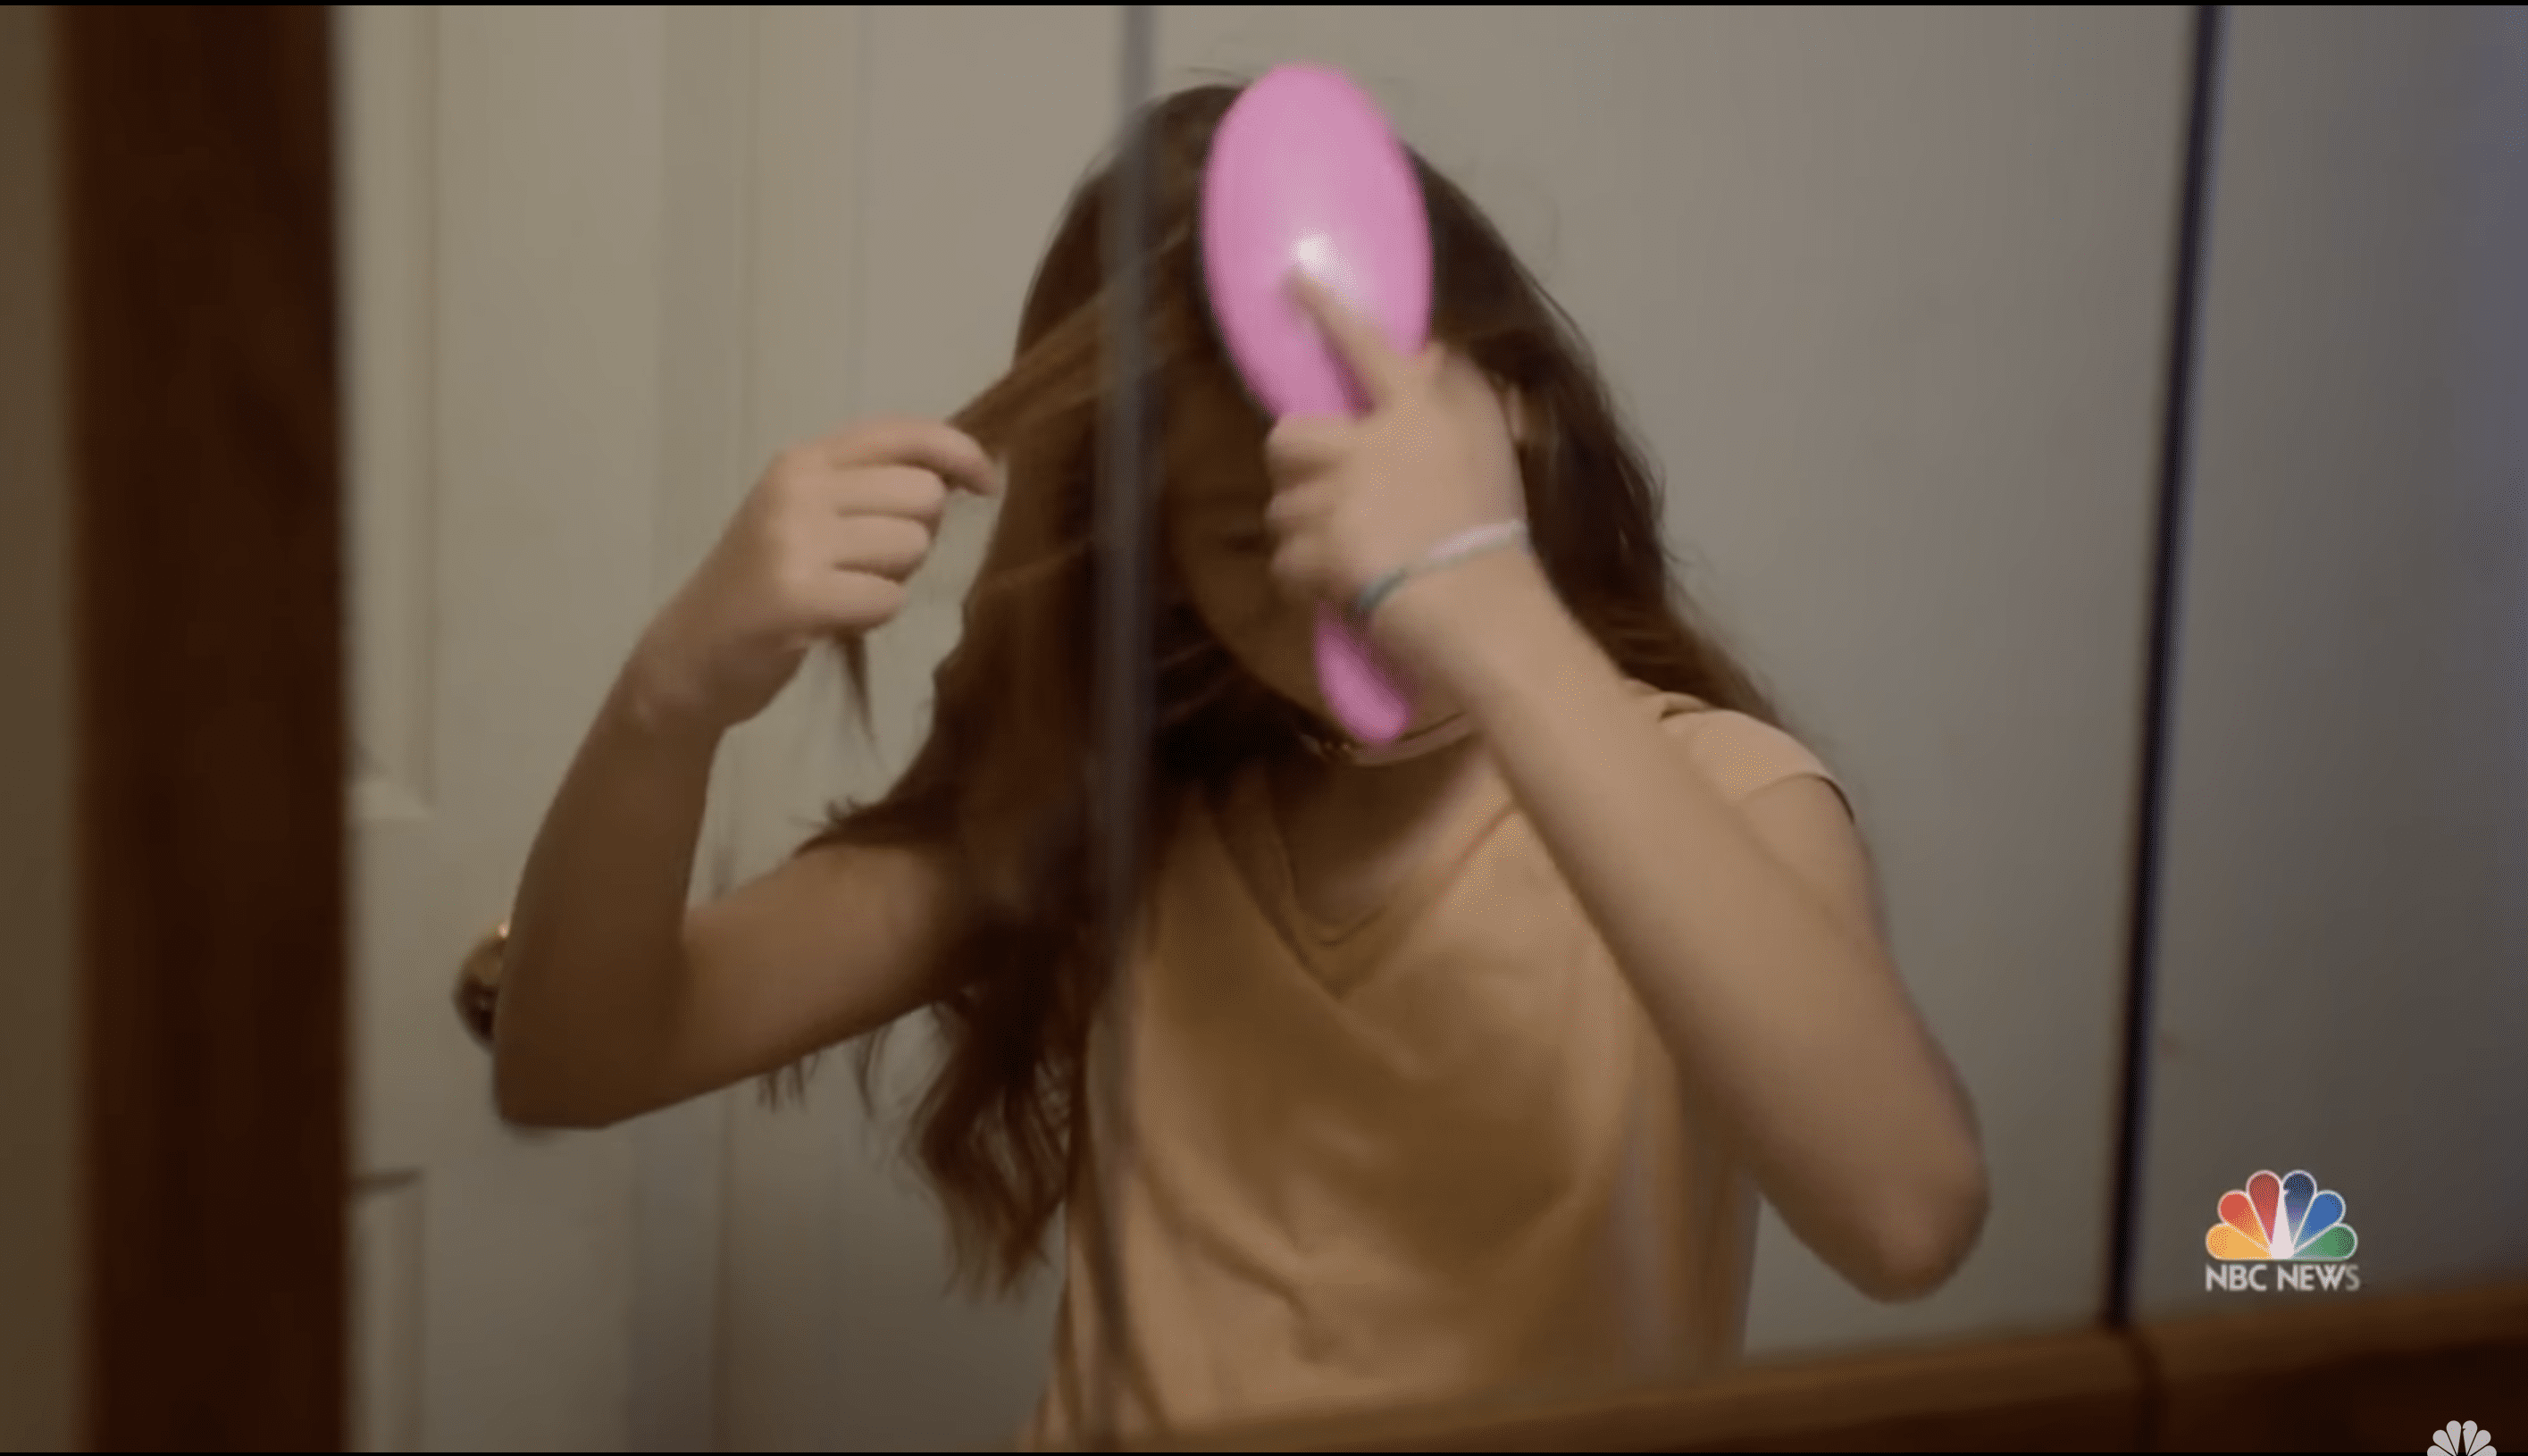 Isabella Pieri kämpfte jeden Morgen damit, sich die Haare zu machen. | Quelle: YouTube.com/NBC News